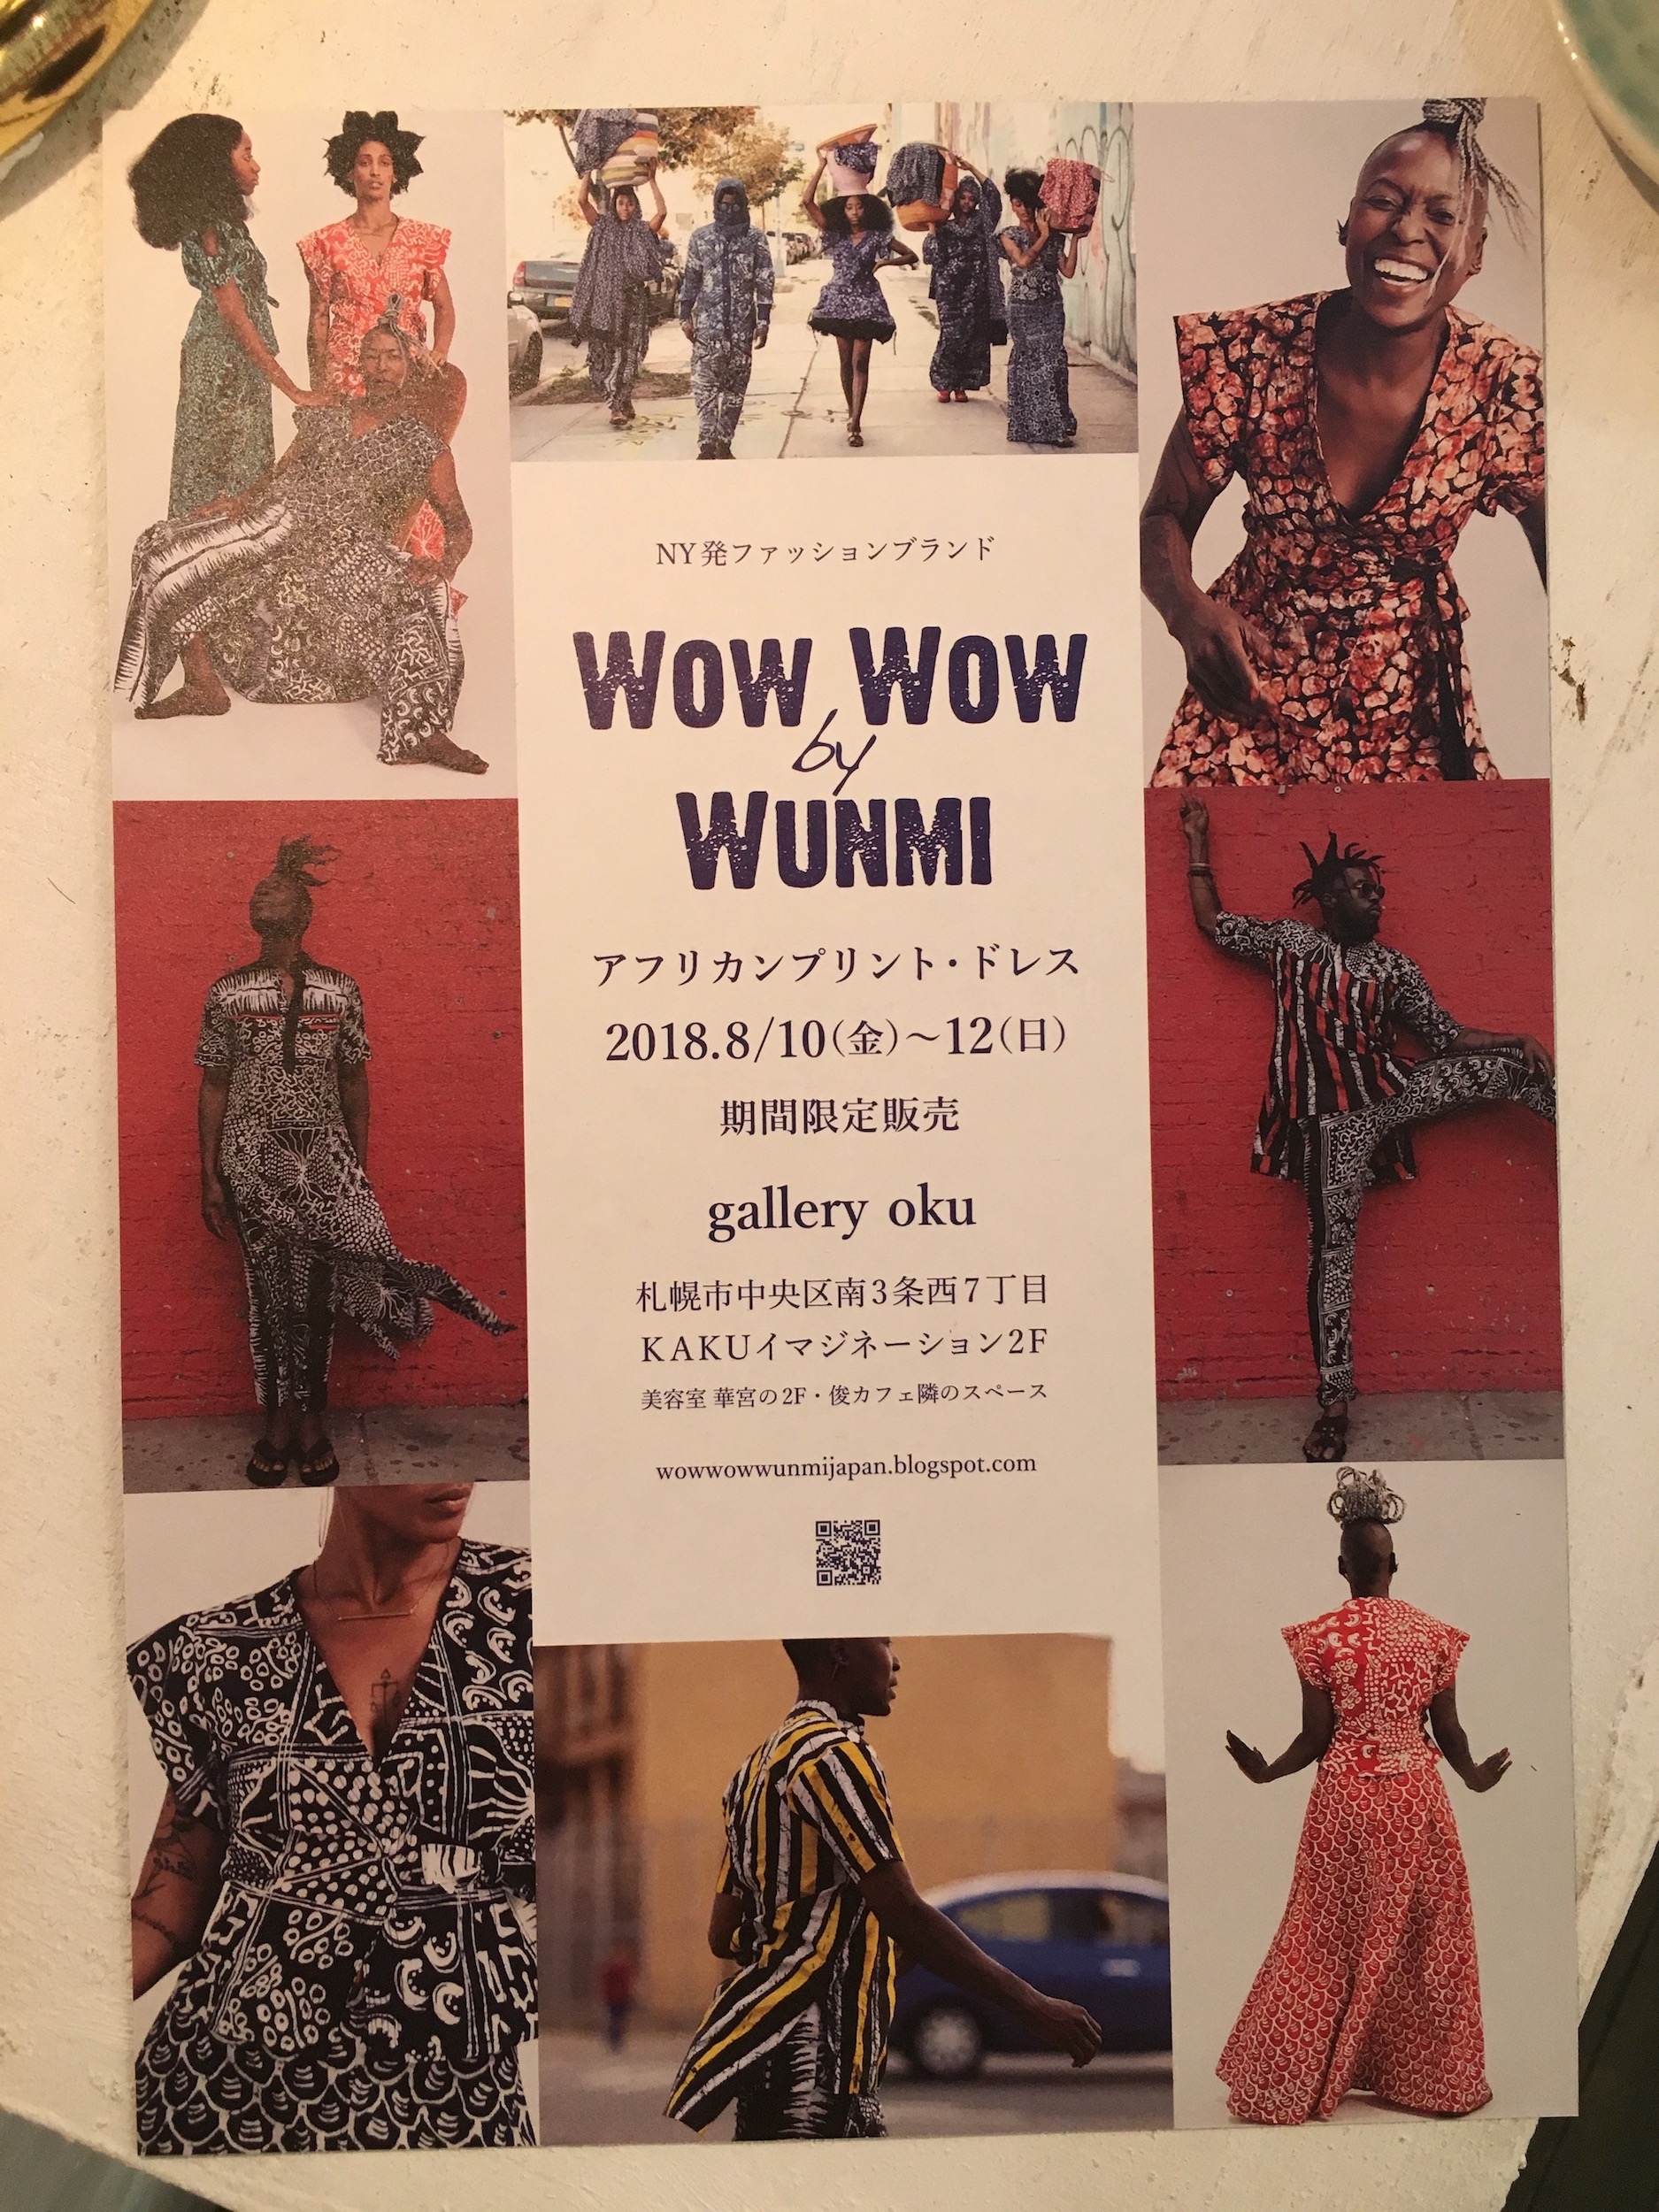 8.10〜12【Wow Wow by WUNMI】 販売イベントのお知らせ